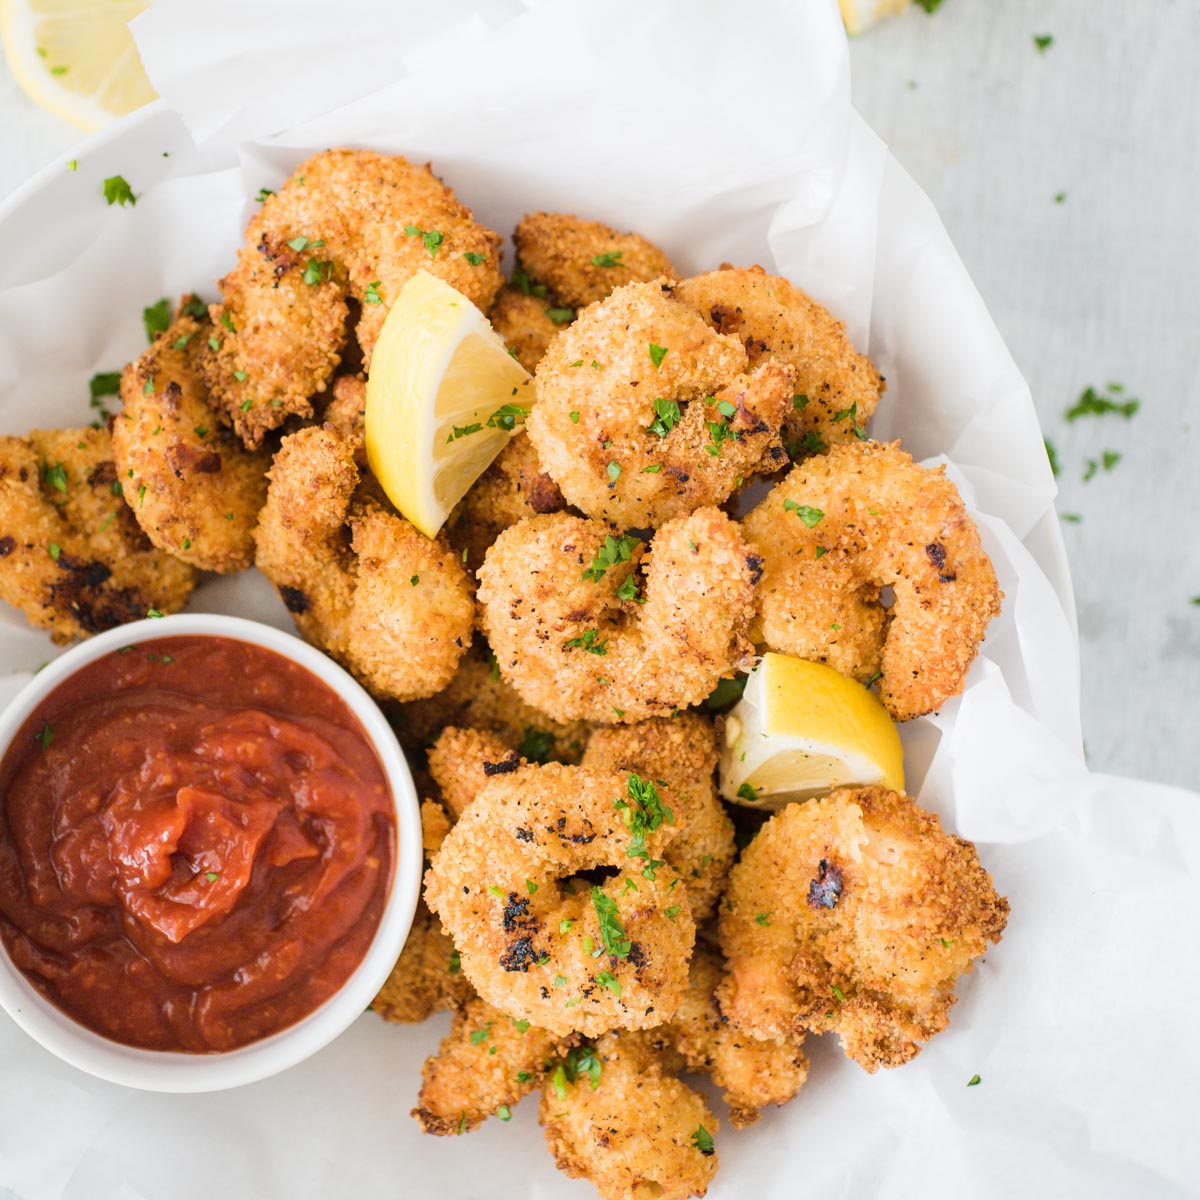 https://sweetlysplendid.com/wp-content/uploads/2020/09/Air-Fryer-Crispy-Fried-Shrimp-1.jpg